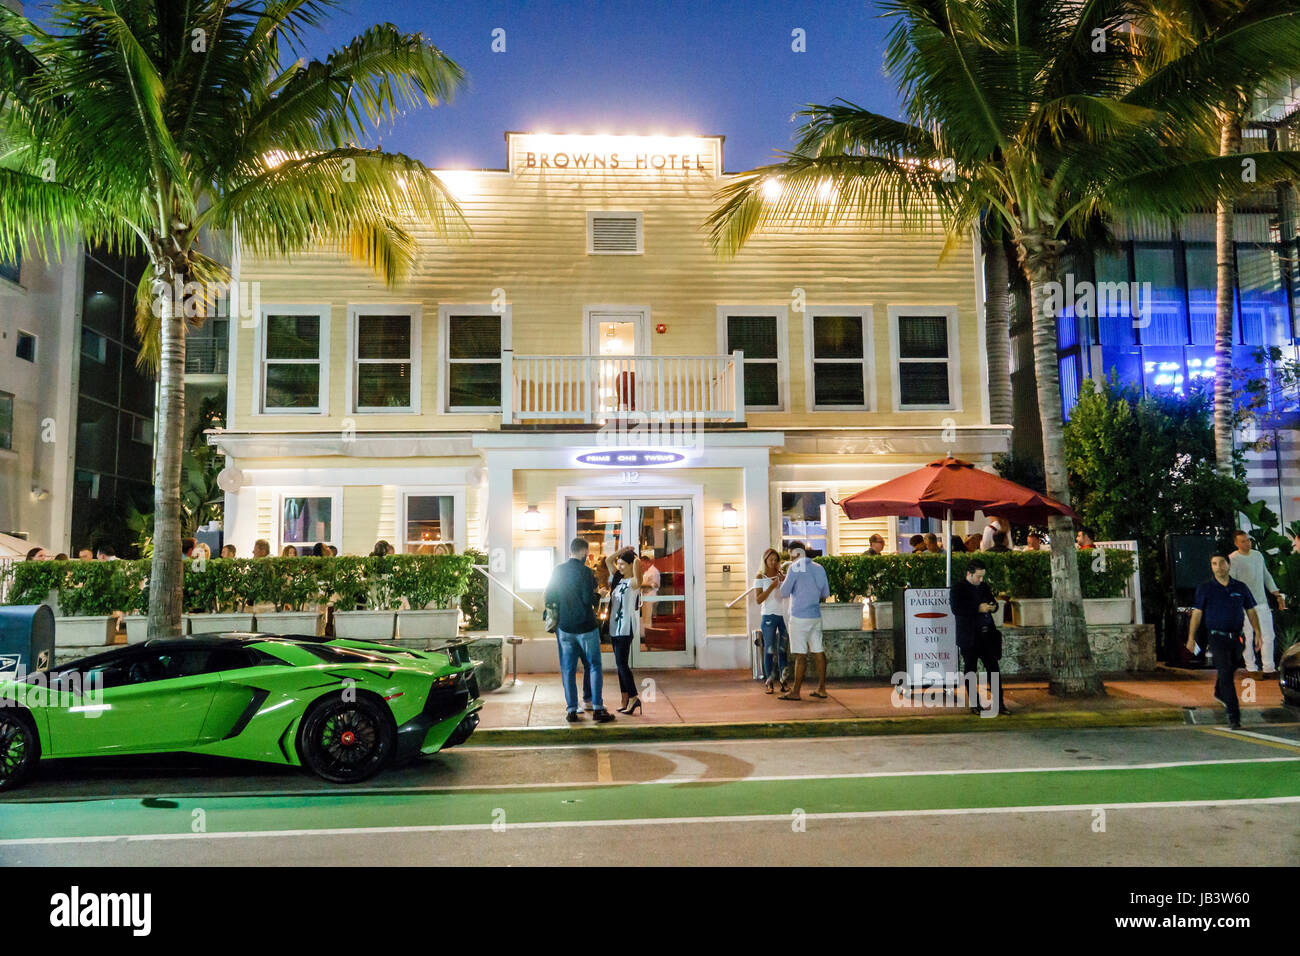 Miami Beach Florida, Ocean Drive, Browns Hotel, bâtiment historique, Prime 112 One Twelve, restaurant restaurants restauration café cafés, steakhouse, fine dini Banque D'Images